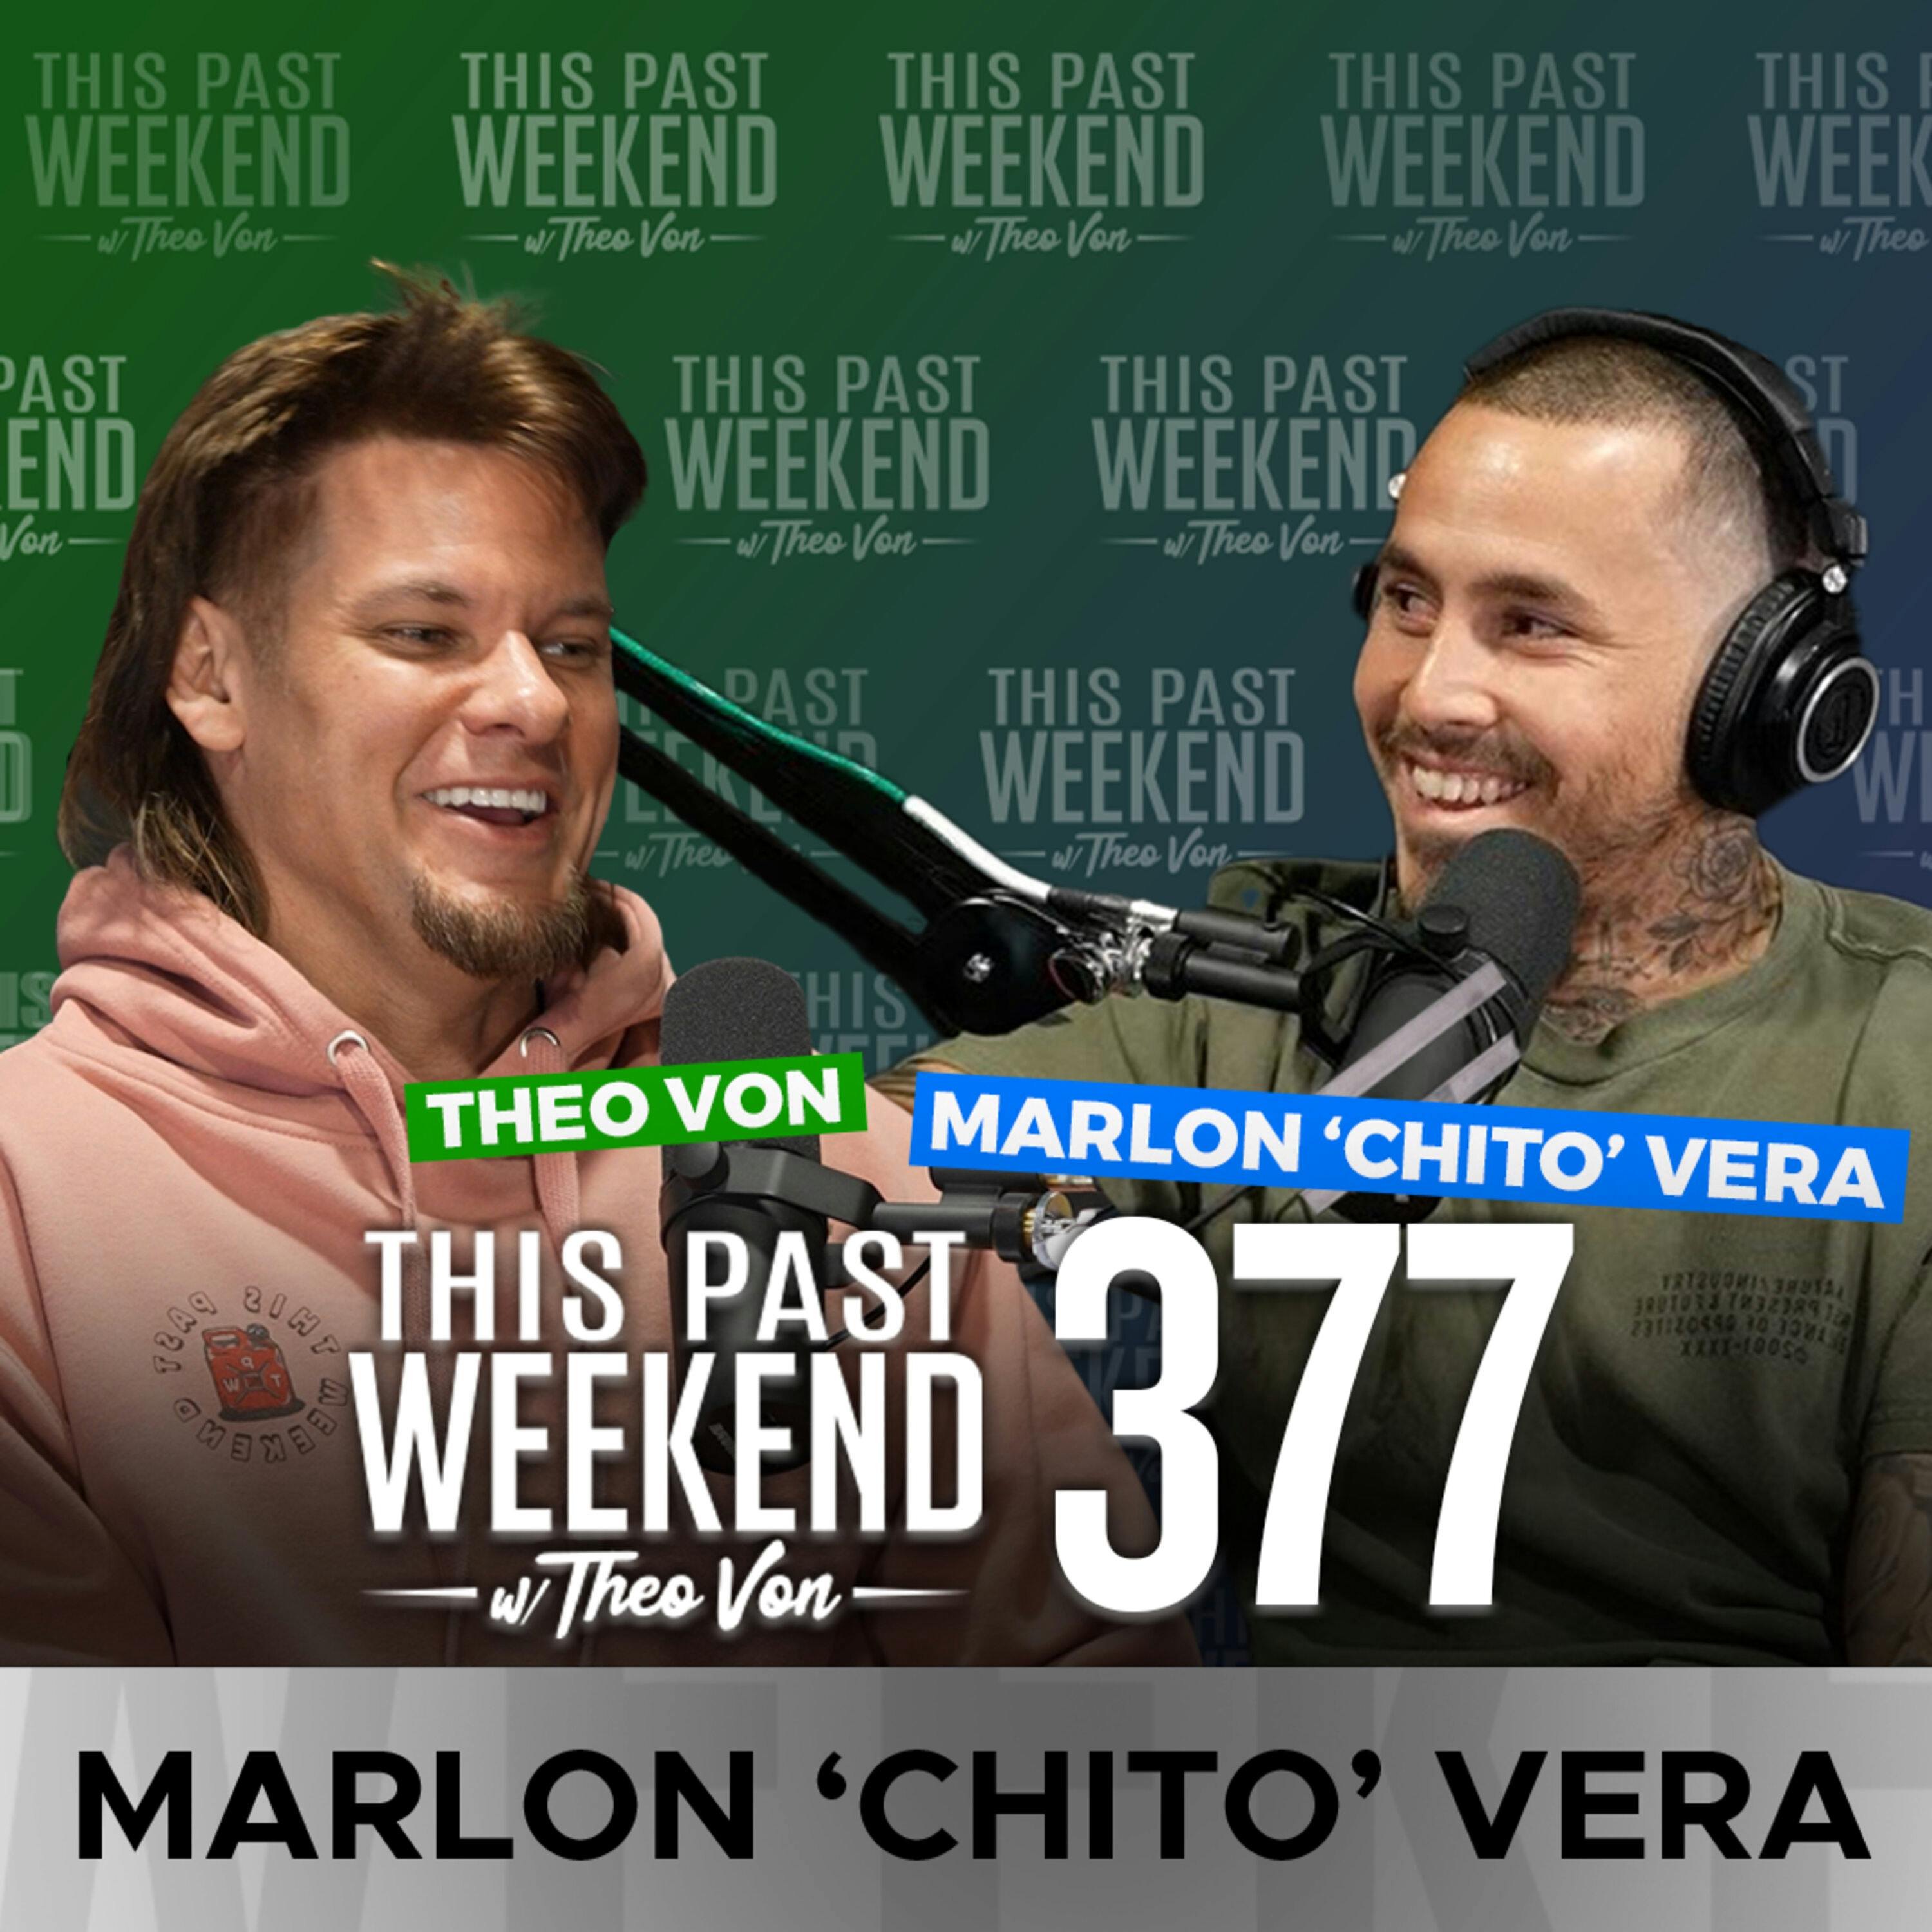 E377 Marlon "Chito" Vera by Theo Von